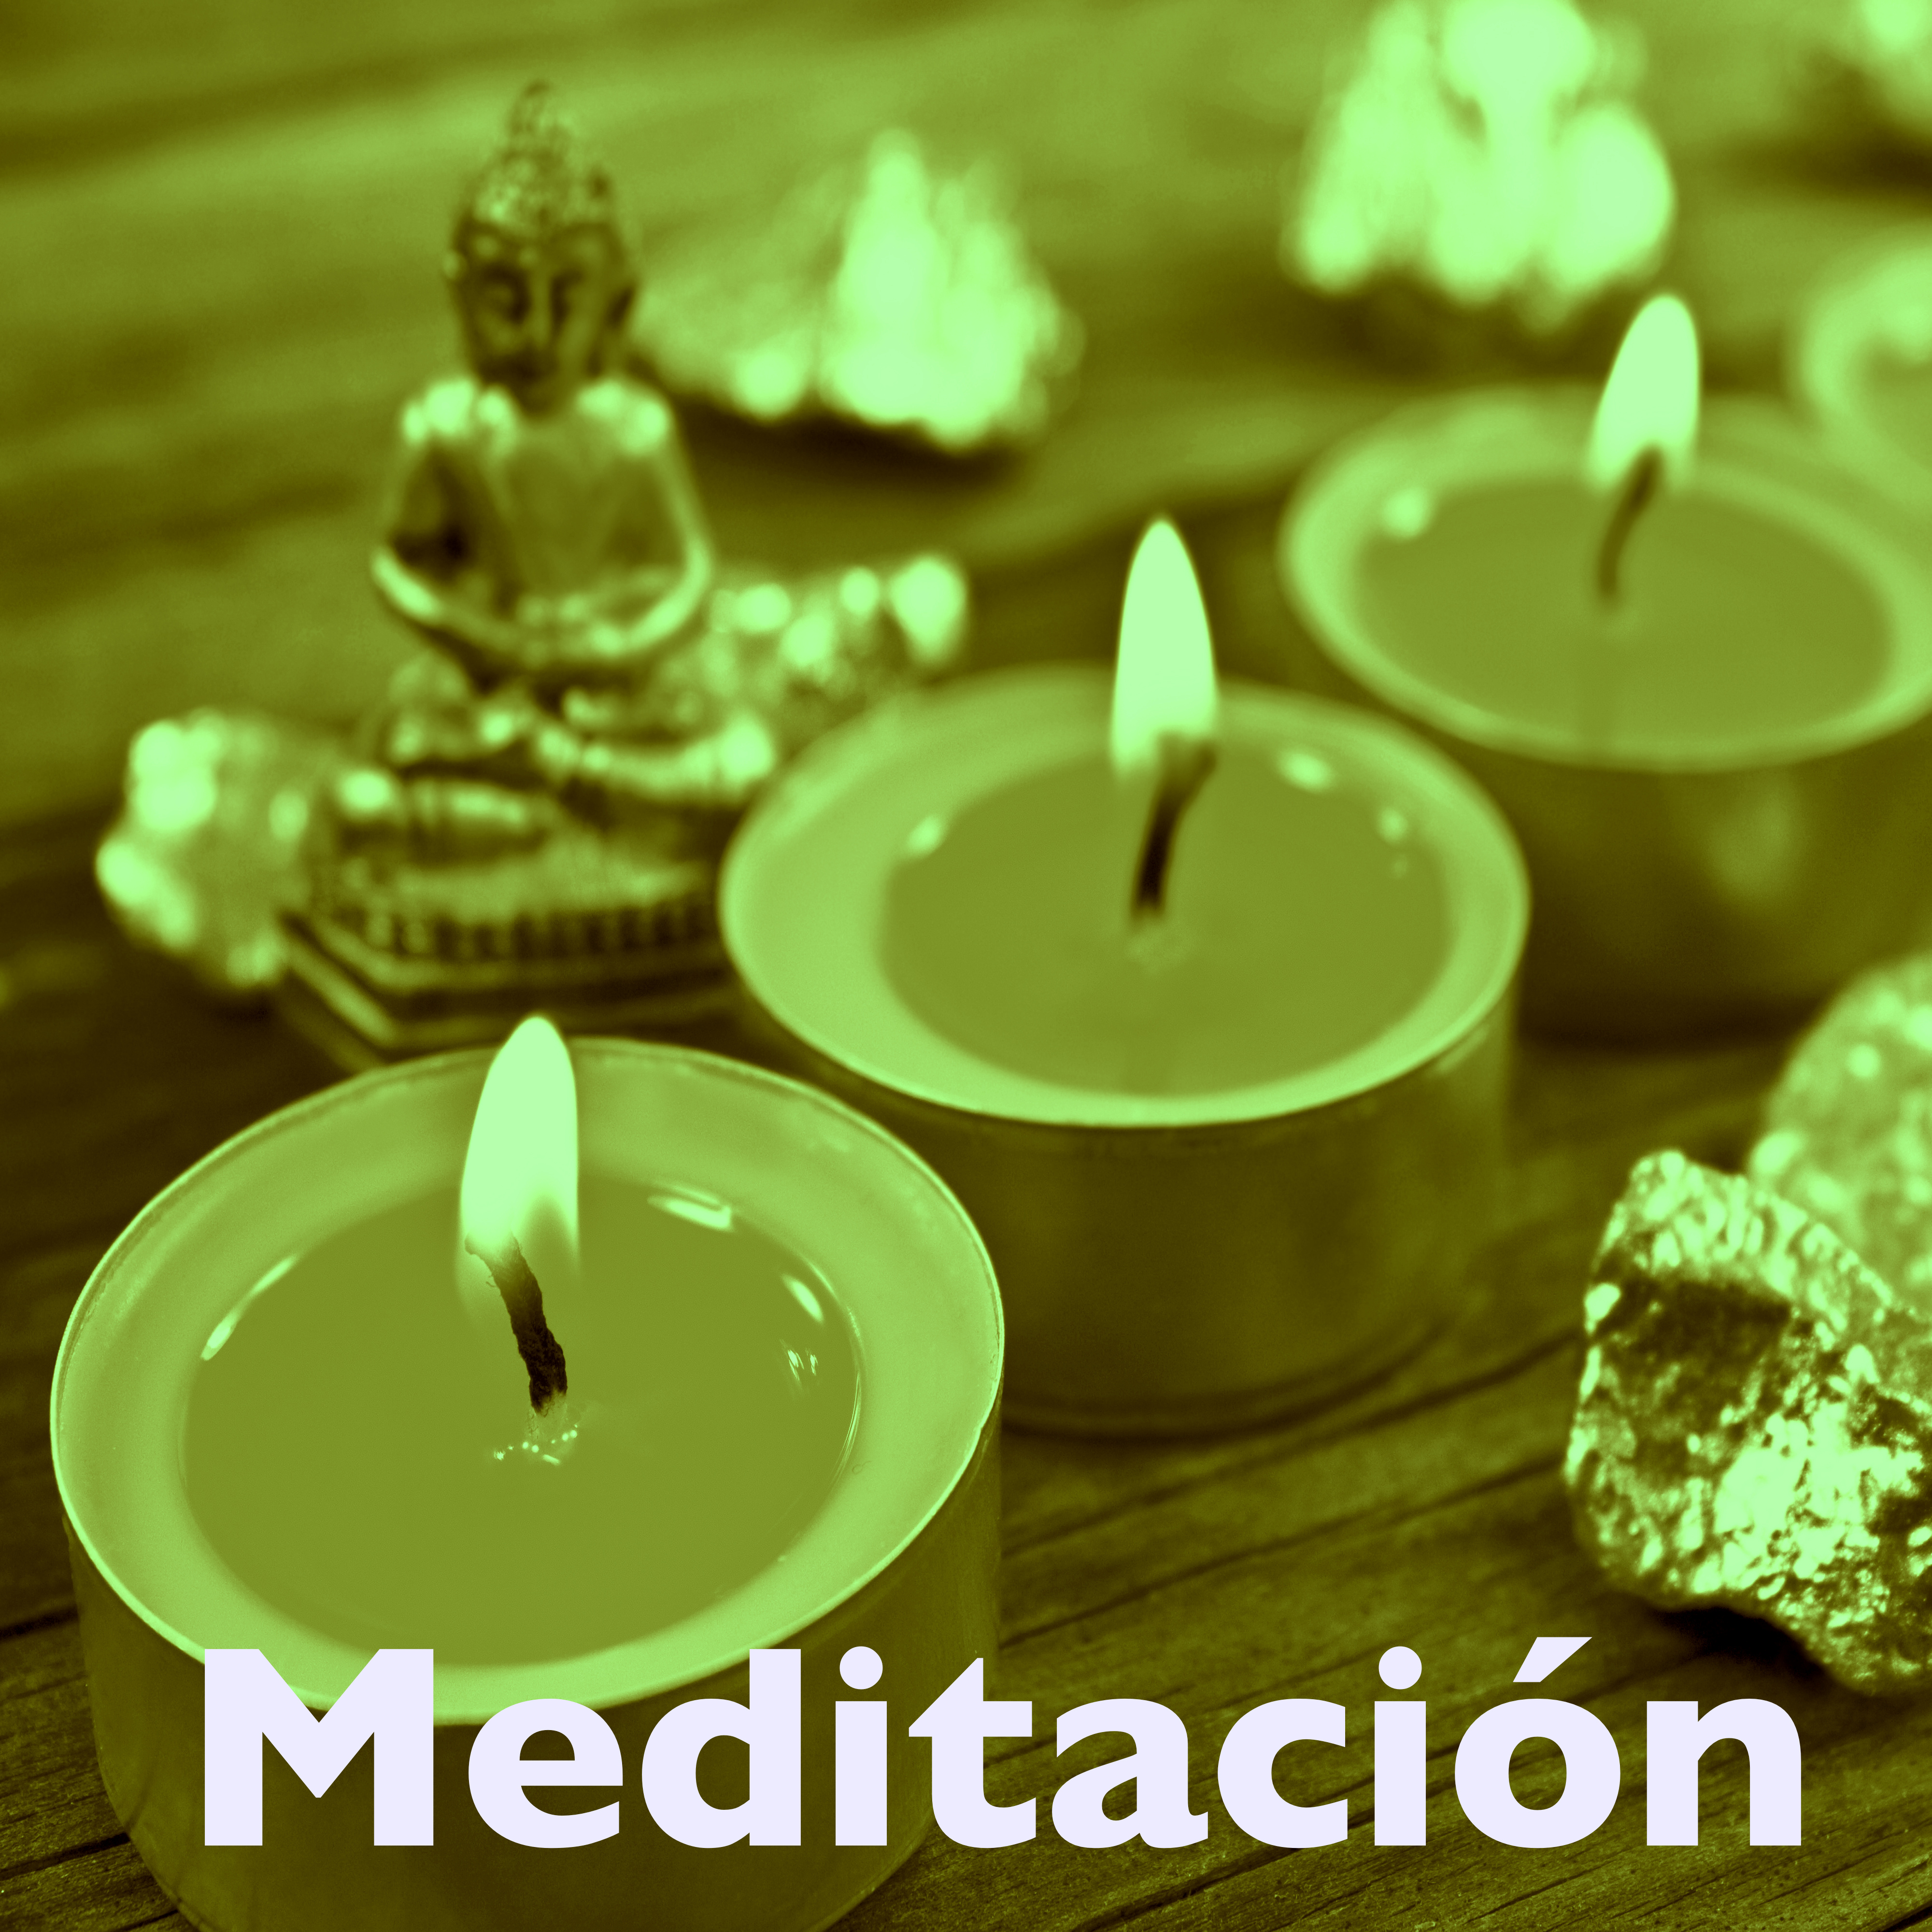 Meditación: Música para Relajar, Meditar y Descansar – Sonidos de la Naturaleza para Aprender a Meditar, Yoga y Mindfulness